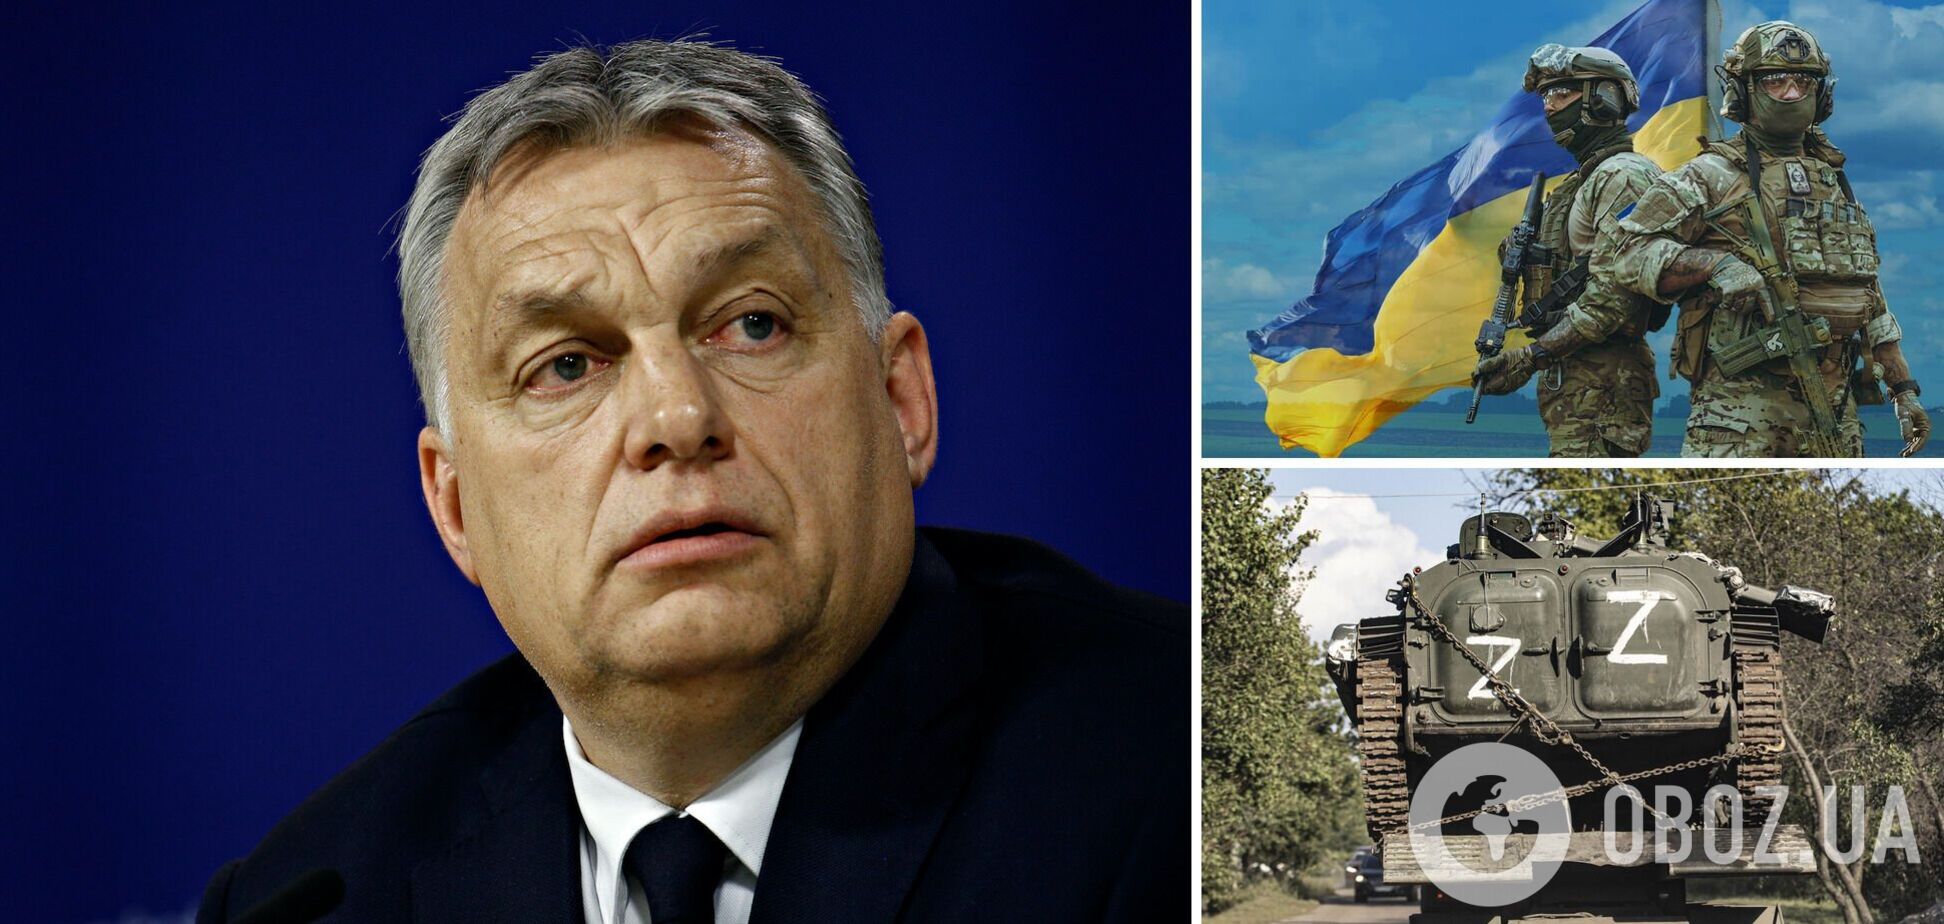 Будущее Украины и гарантии: вариант Орбана — конечно, не лучший, но, возможно, самый реальный